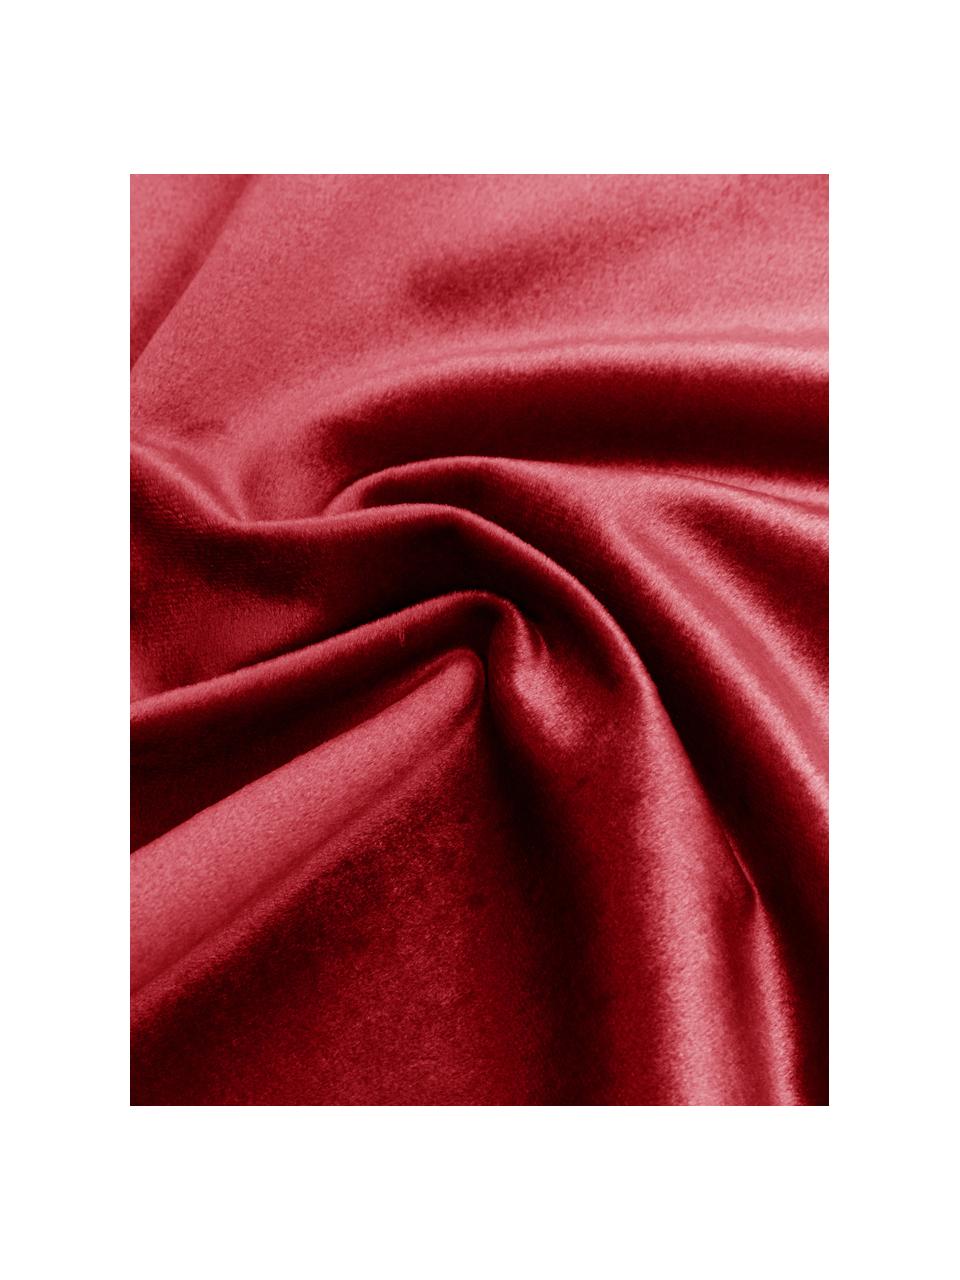 Samt-Tischsets Simone, 2 Stück, 100% Polyestersamt, Rot, 35 x 45 cm